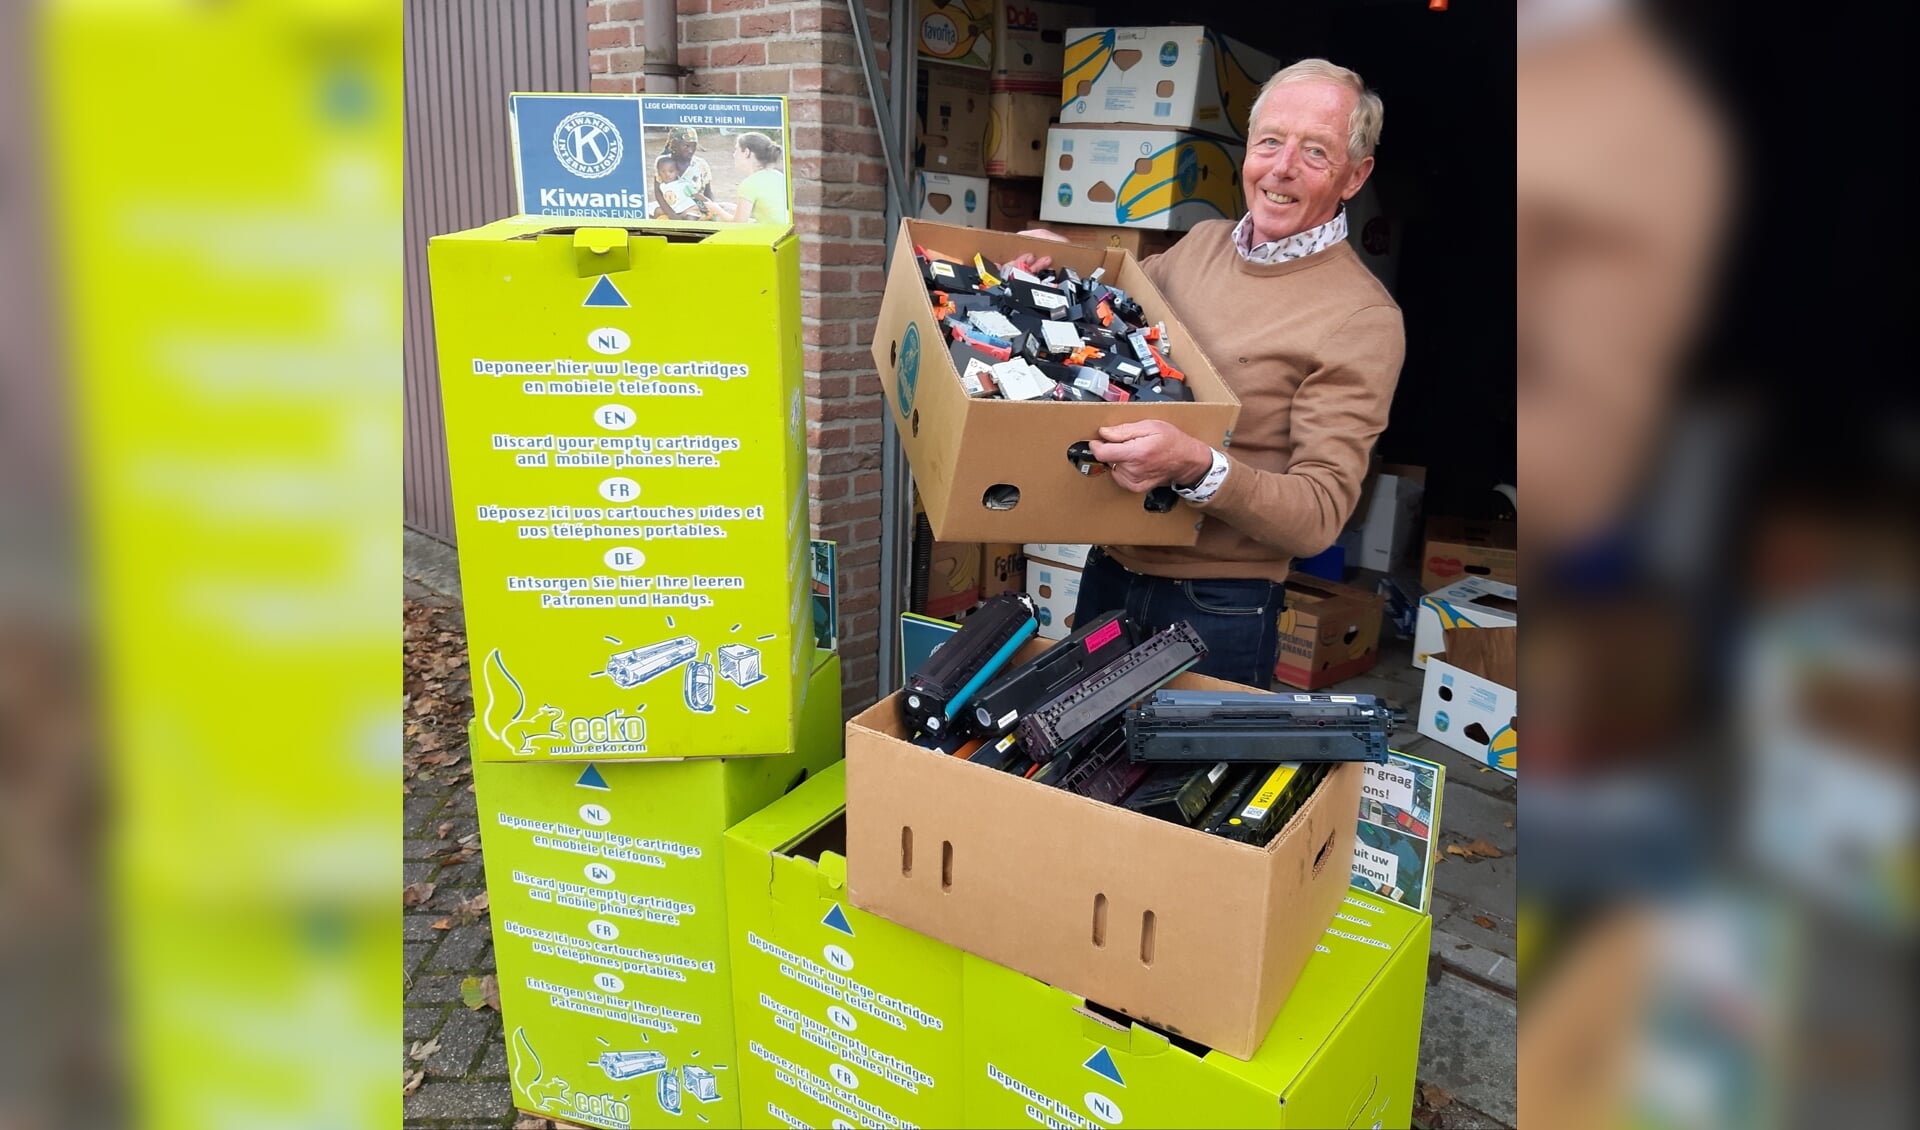 Koudekerker Piet Smit van Kiwanis is namens de inzamelaars heel trots dat de mijlpaal van 100.000 ingezamelde telefoons en cartridges is bereikt. 